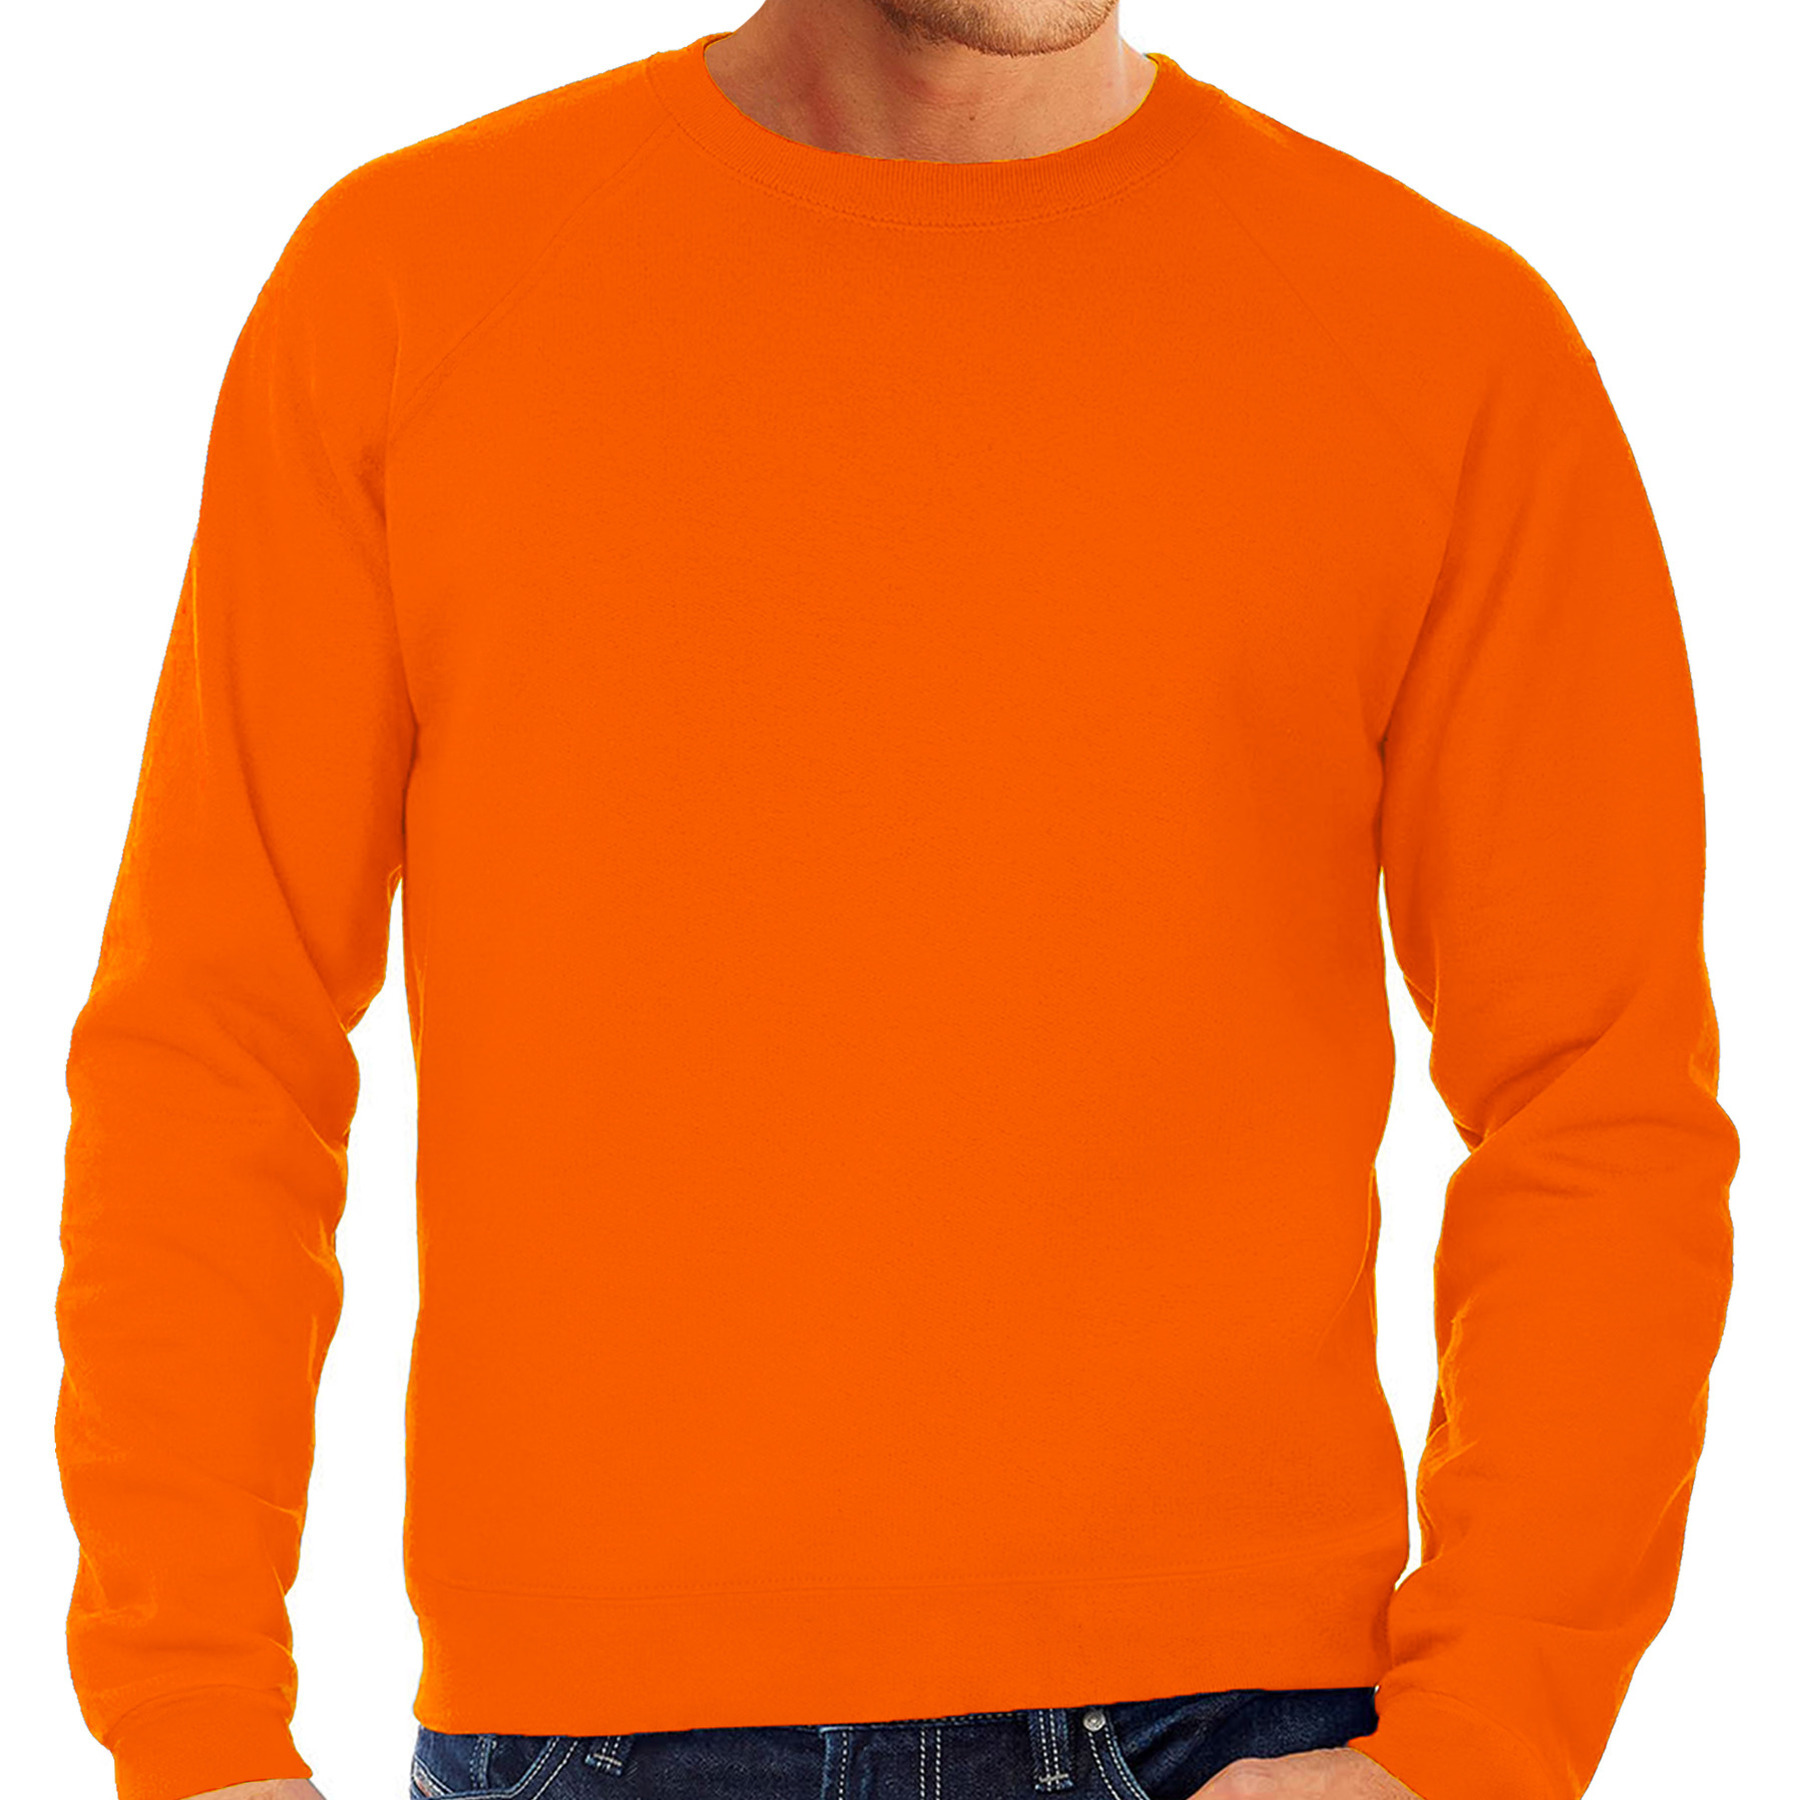 Sweater / sweatshirt trui oranje met ronde hals en raglan mouwen voor mannen Koningsdag / oranje supporter